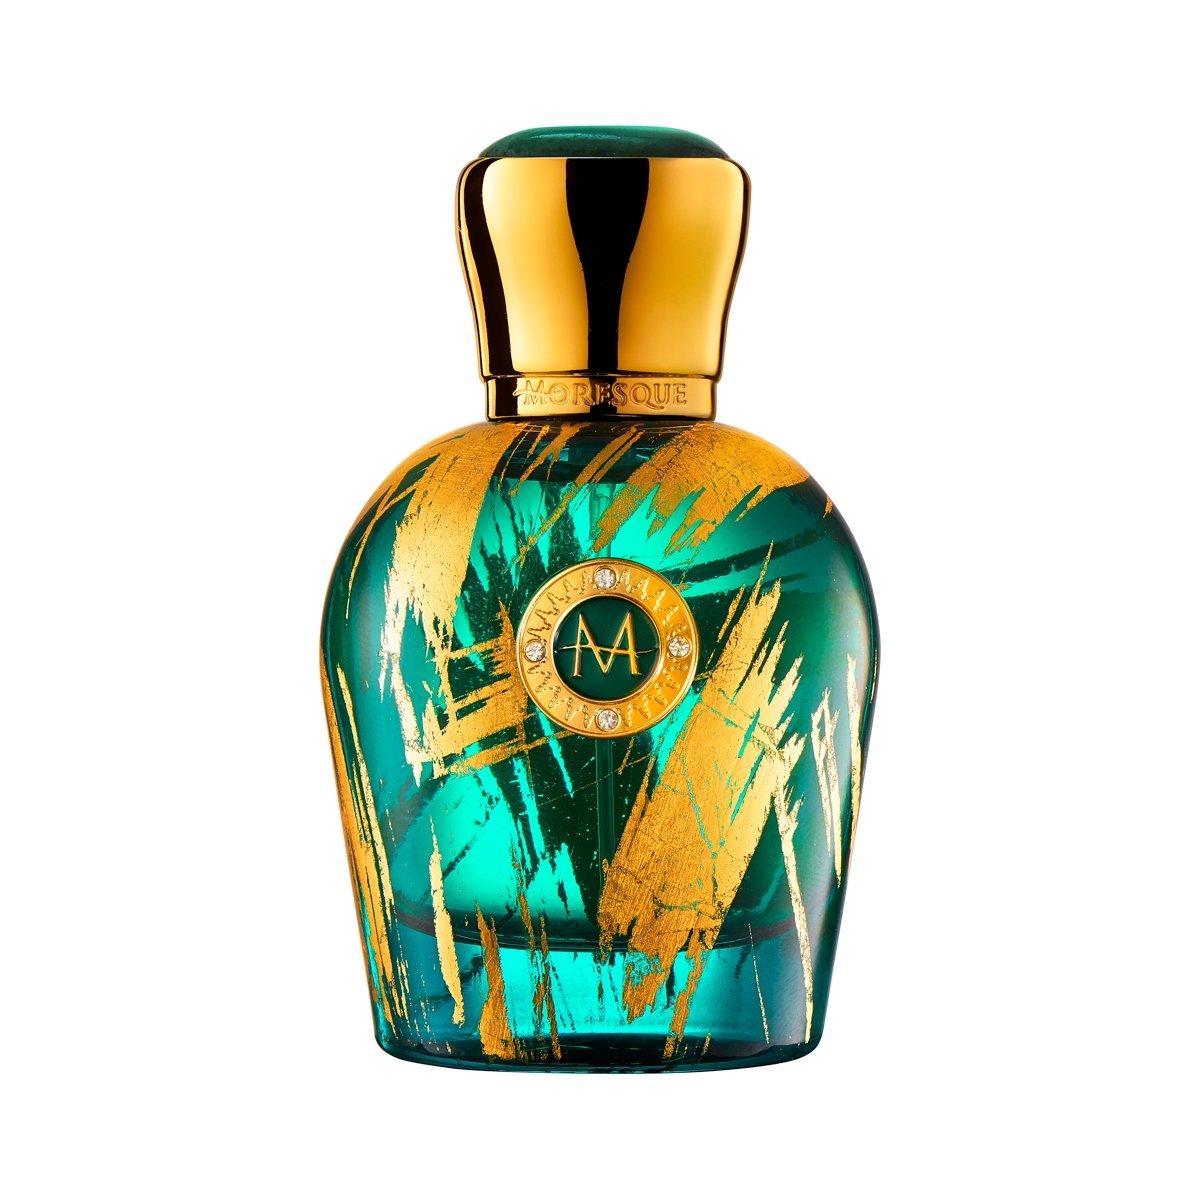 Moresque Parfums Fiore Di Portofino Perfume & Cologne 1.7 oz/50 ml Decants R Us